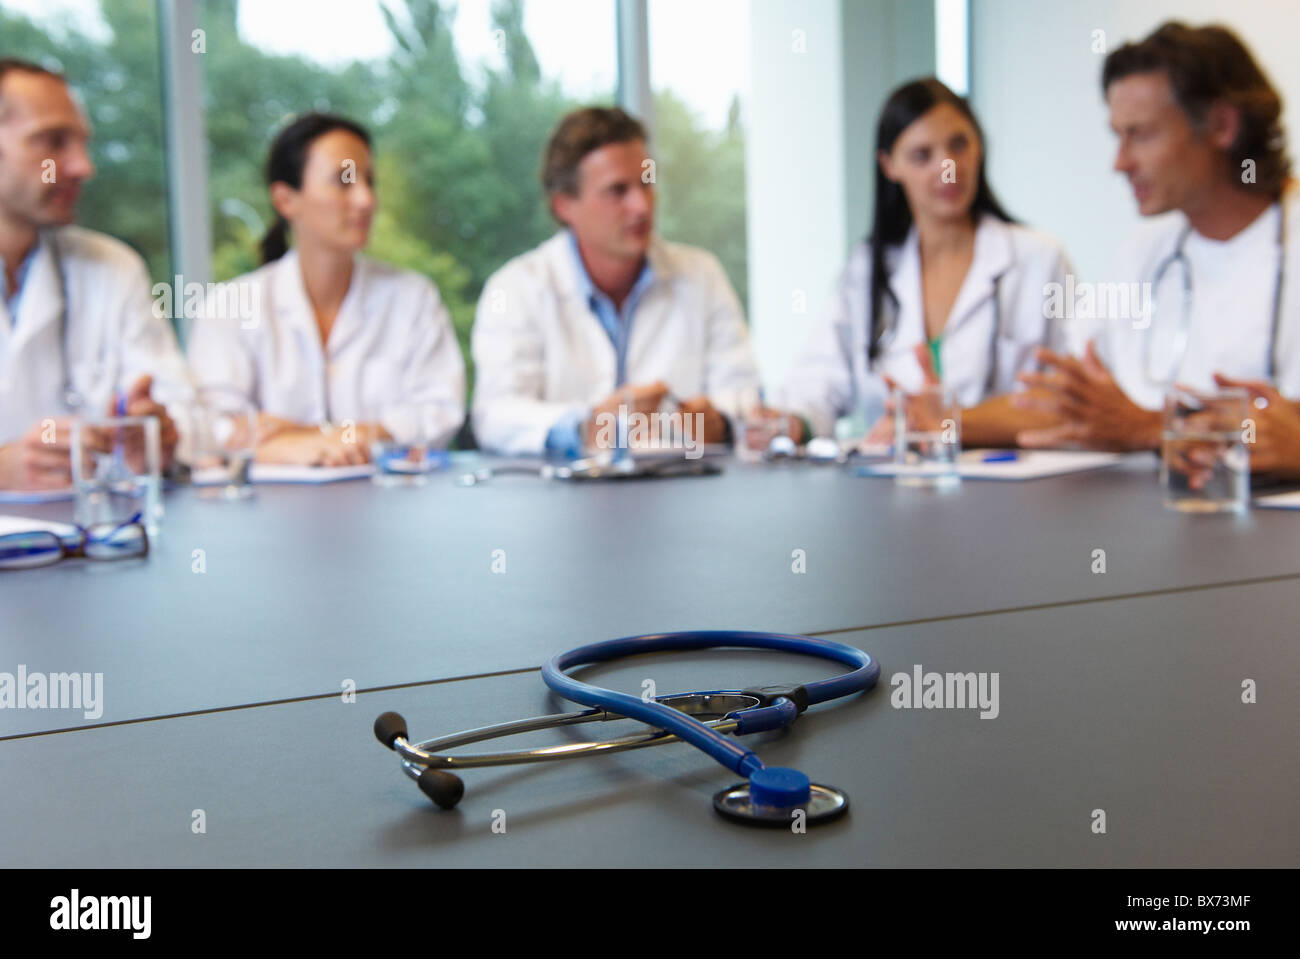 Reunión de los médicos, el estetoscopio sobre la mesa Foto de stock